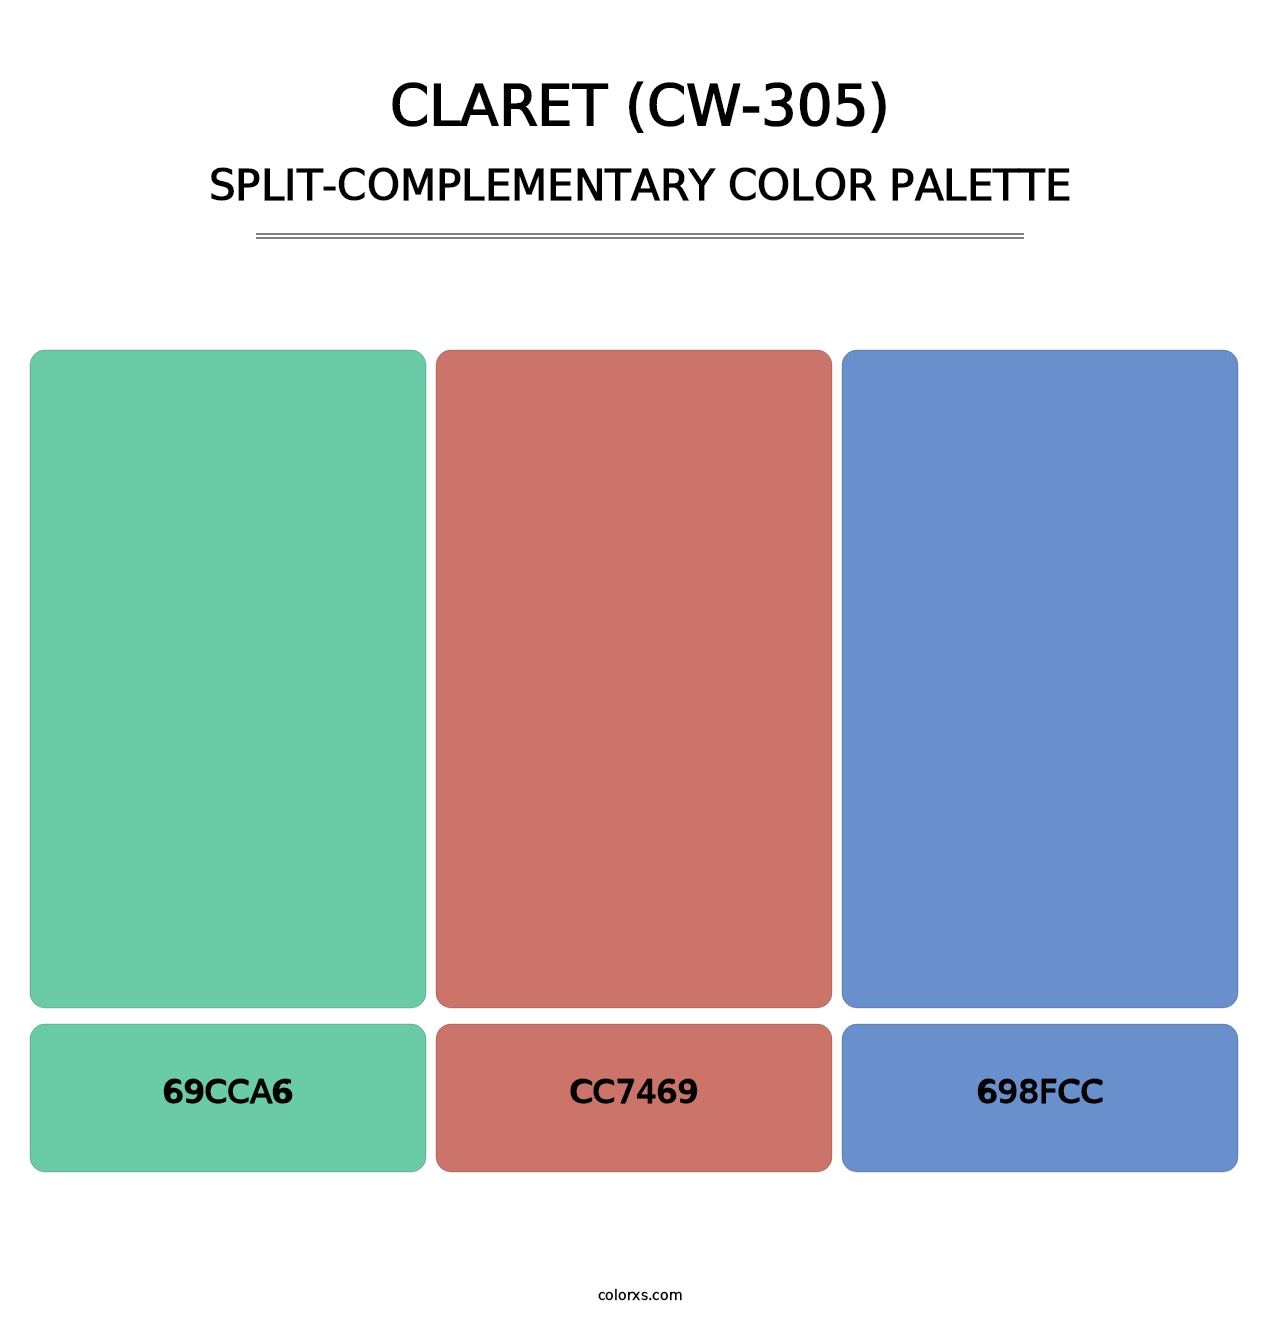 Claret (CW-305) - Split-Complementary Color Palette